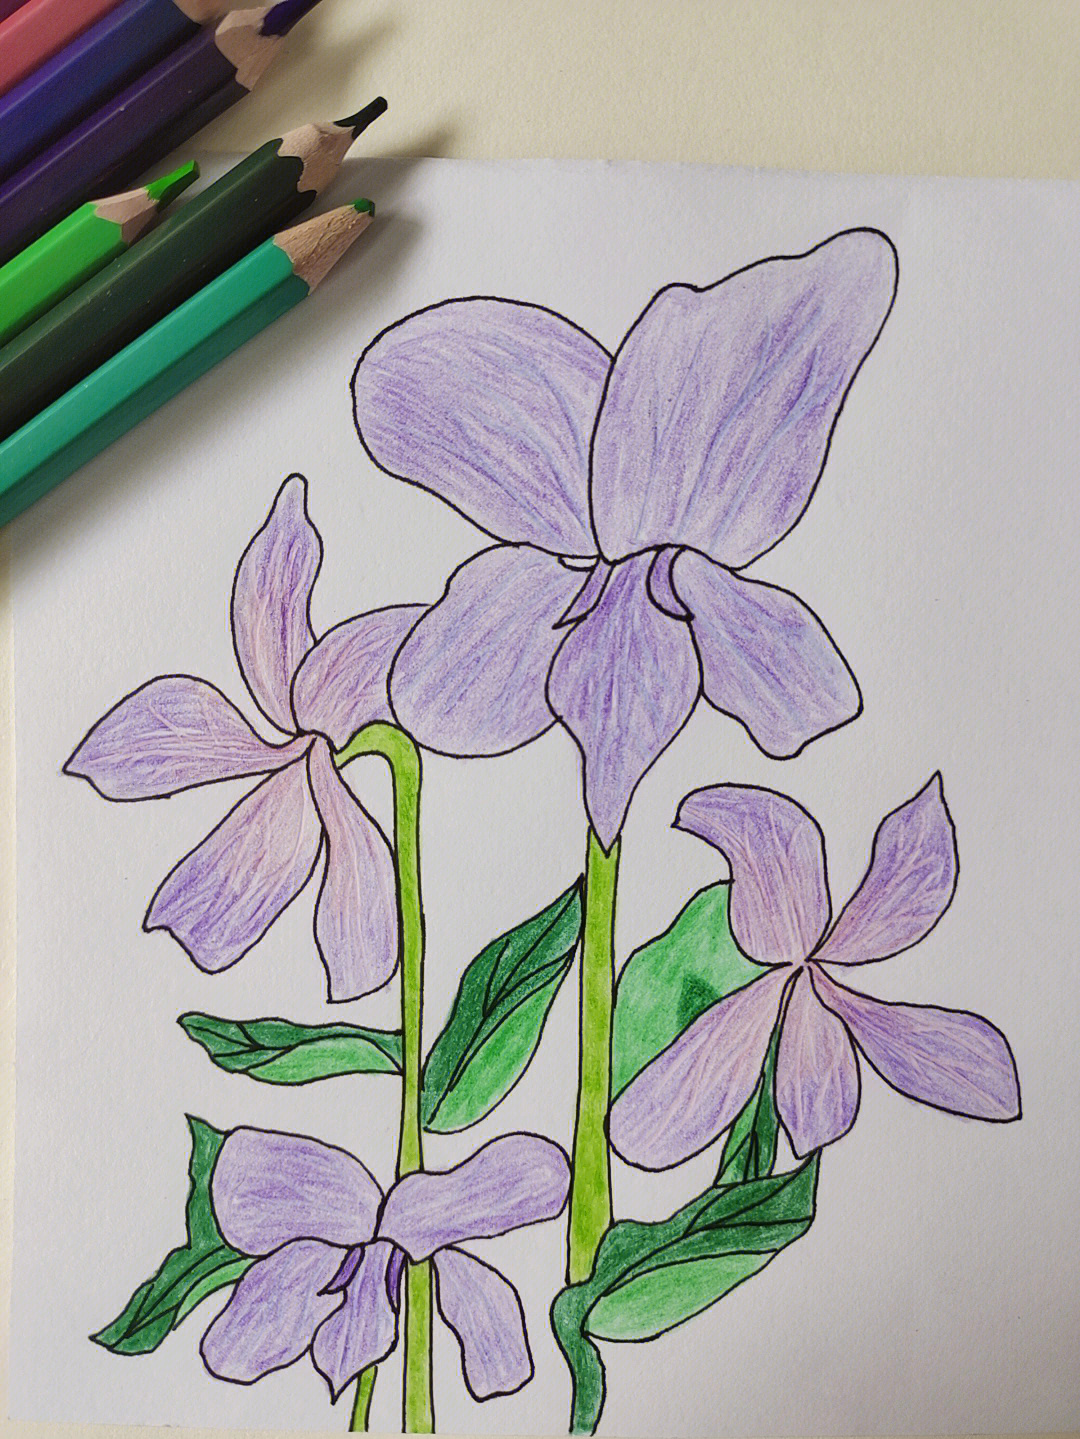 紫罗兰的简单画法图片